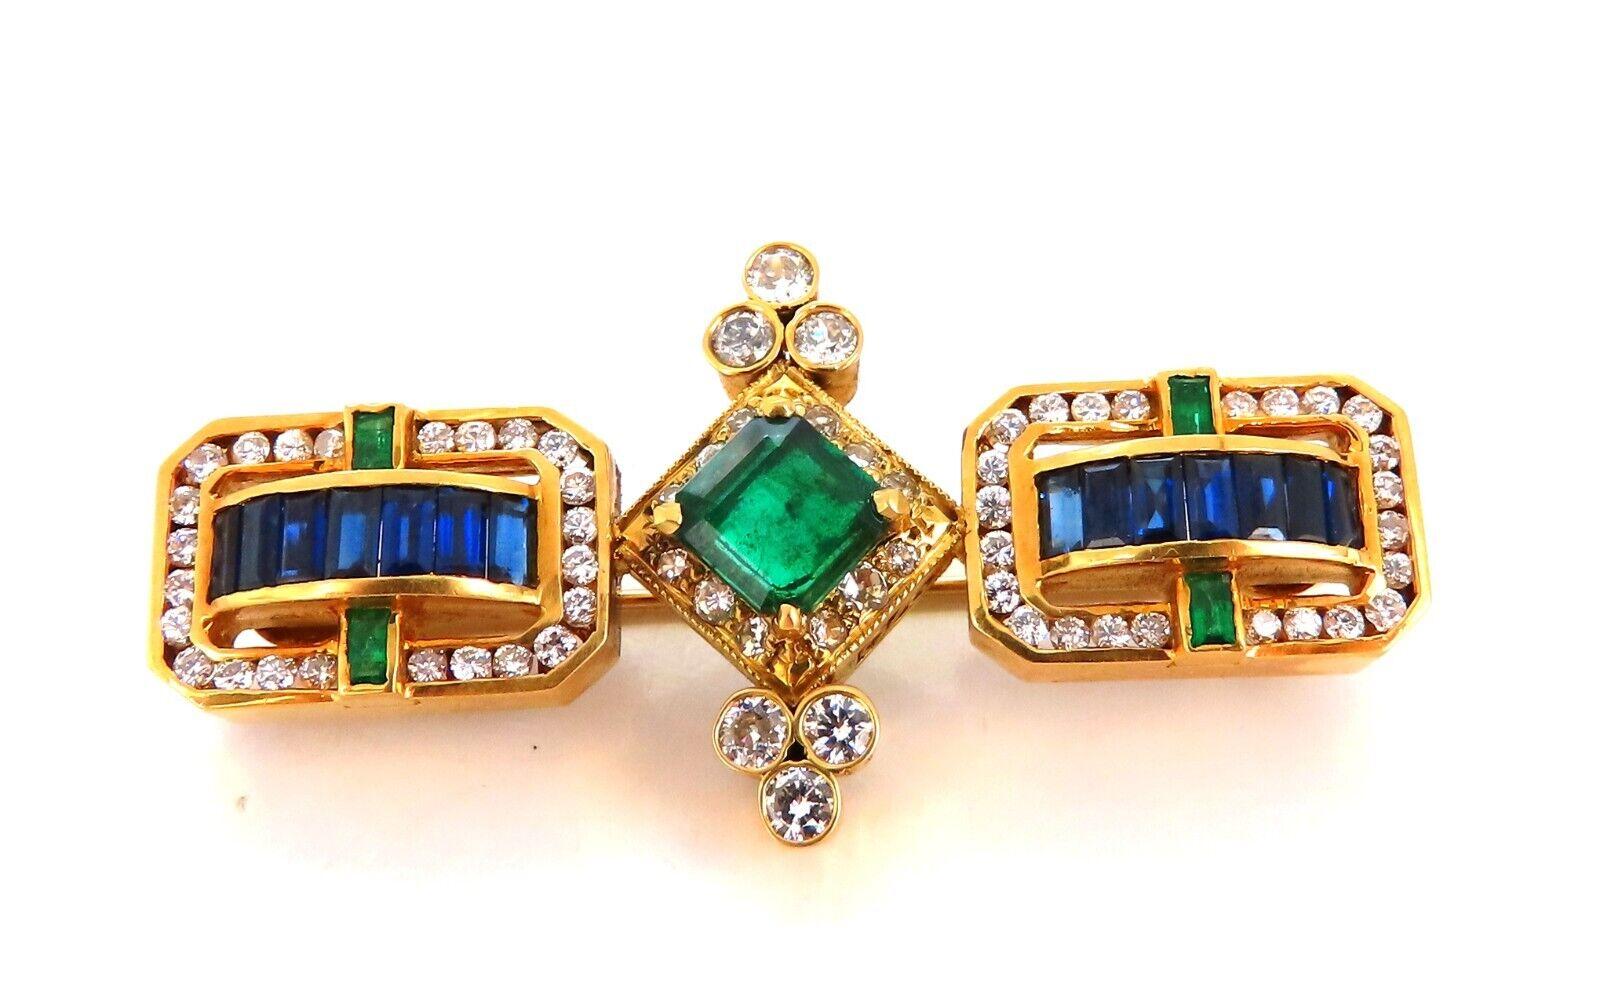 Seltener handgefertigter Smaragd-Saphir-Ring

Sehr gut gemacht

1.50ct Natürlicher Zentrumssmaragd

7 x 7,2 mm

1.55ct natürliche Baguette-Saphire

2.00ct natürliche Diamanten

H-Farbe Vs-2 Klarheit

2 x 1 Zoll Durchmesser

Handgefertigt 

18kt.